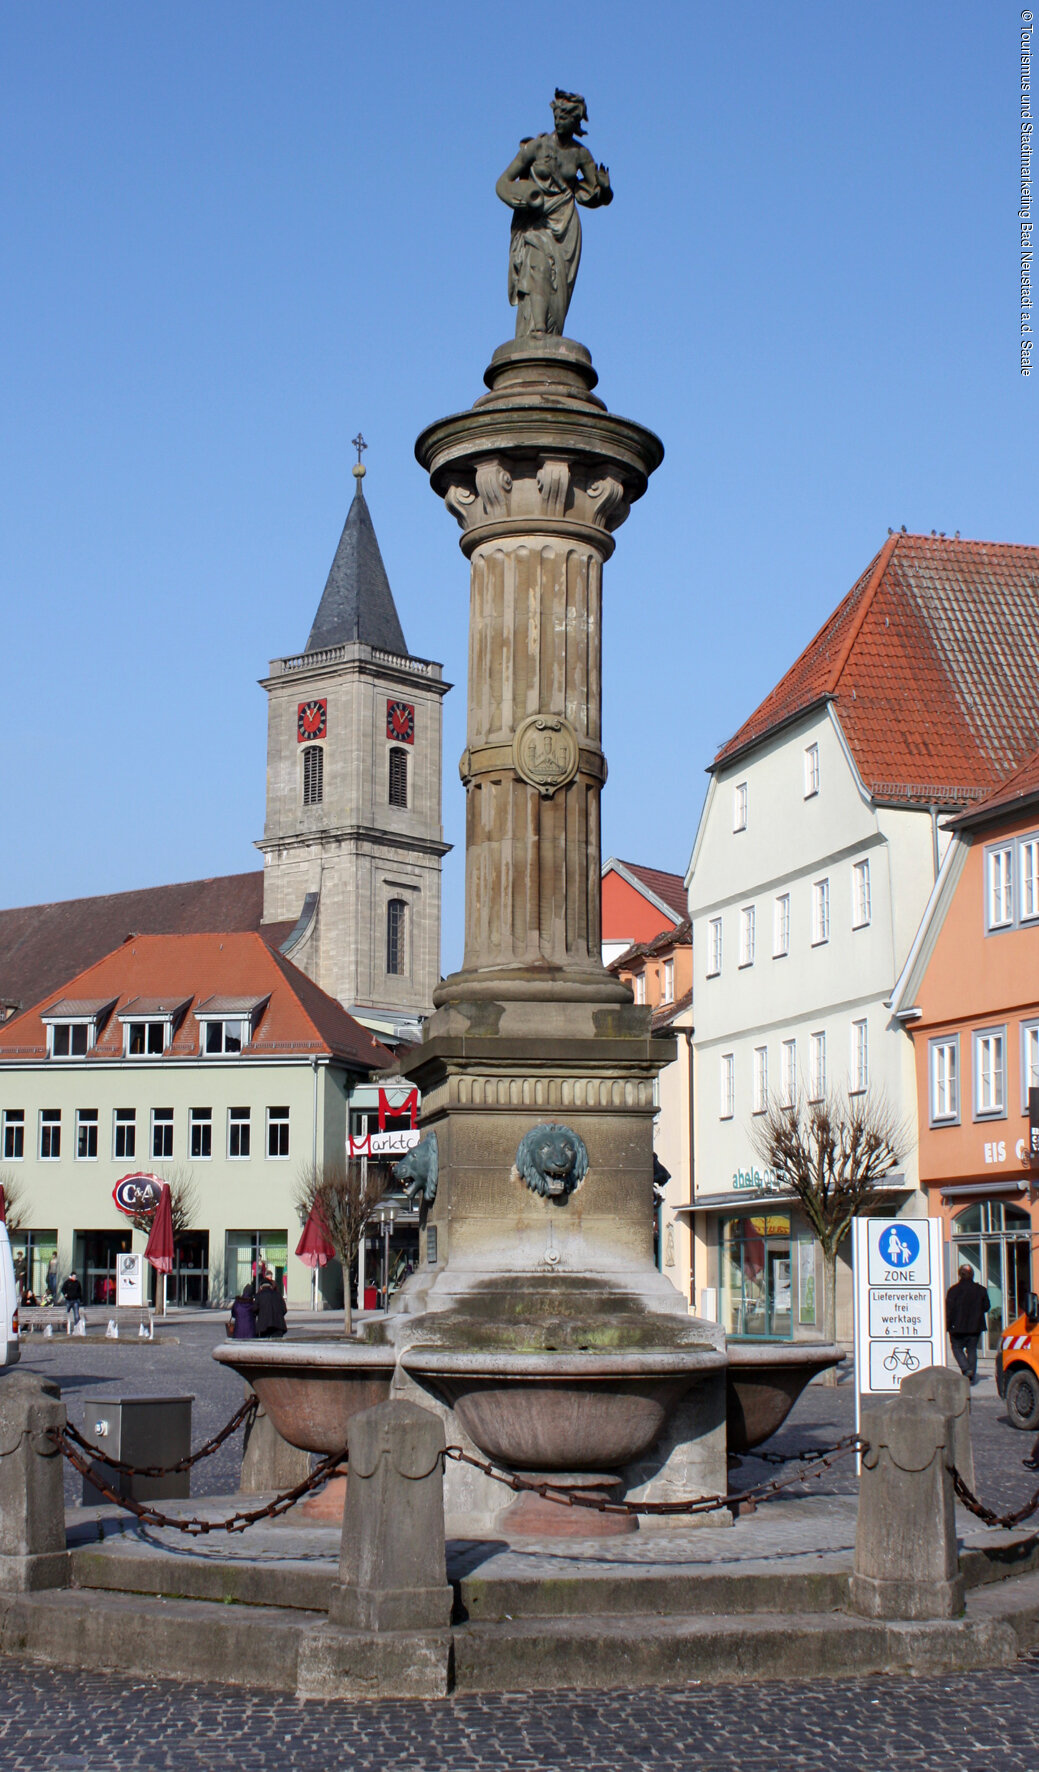 Marktbärbel (Bad Neustadt, Rhön)